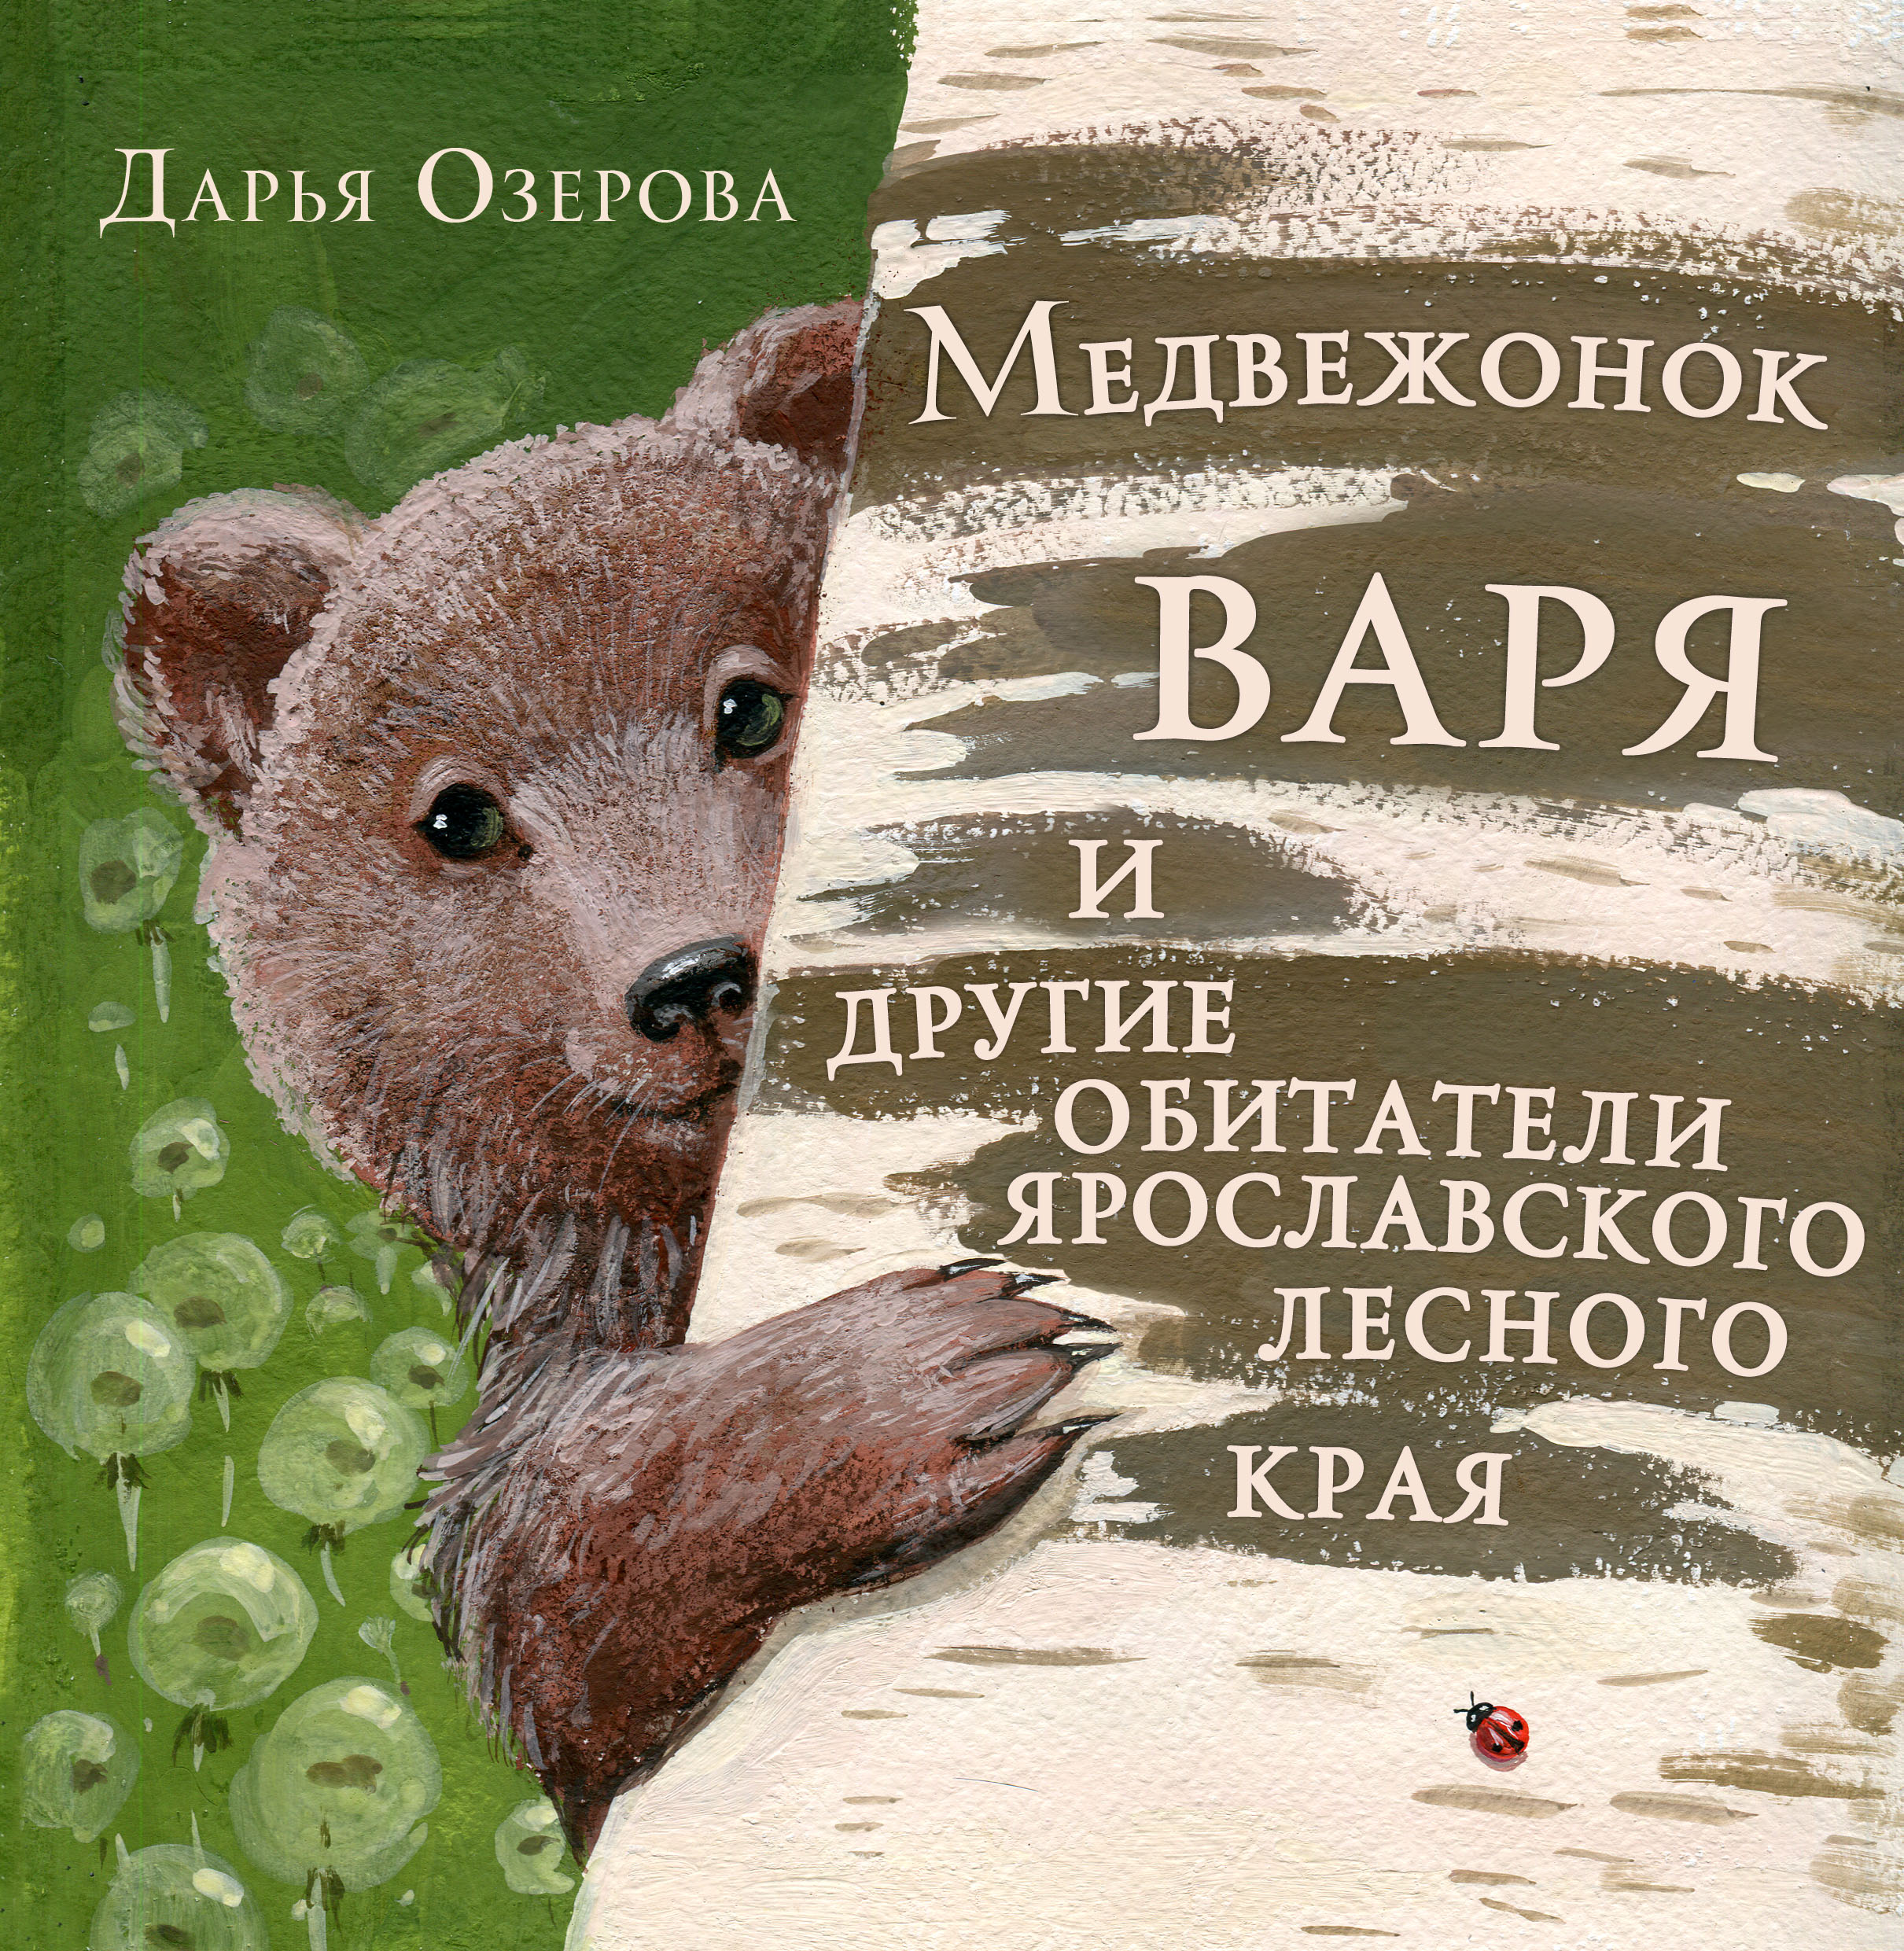 В лесном краю книга. Медведь с книгой. Мишки в книжке. Медвежонок с книгой. Книга медведи и другие.